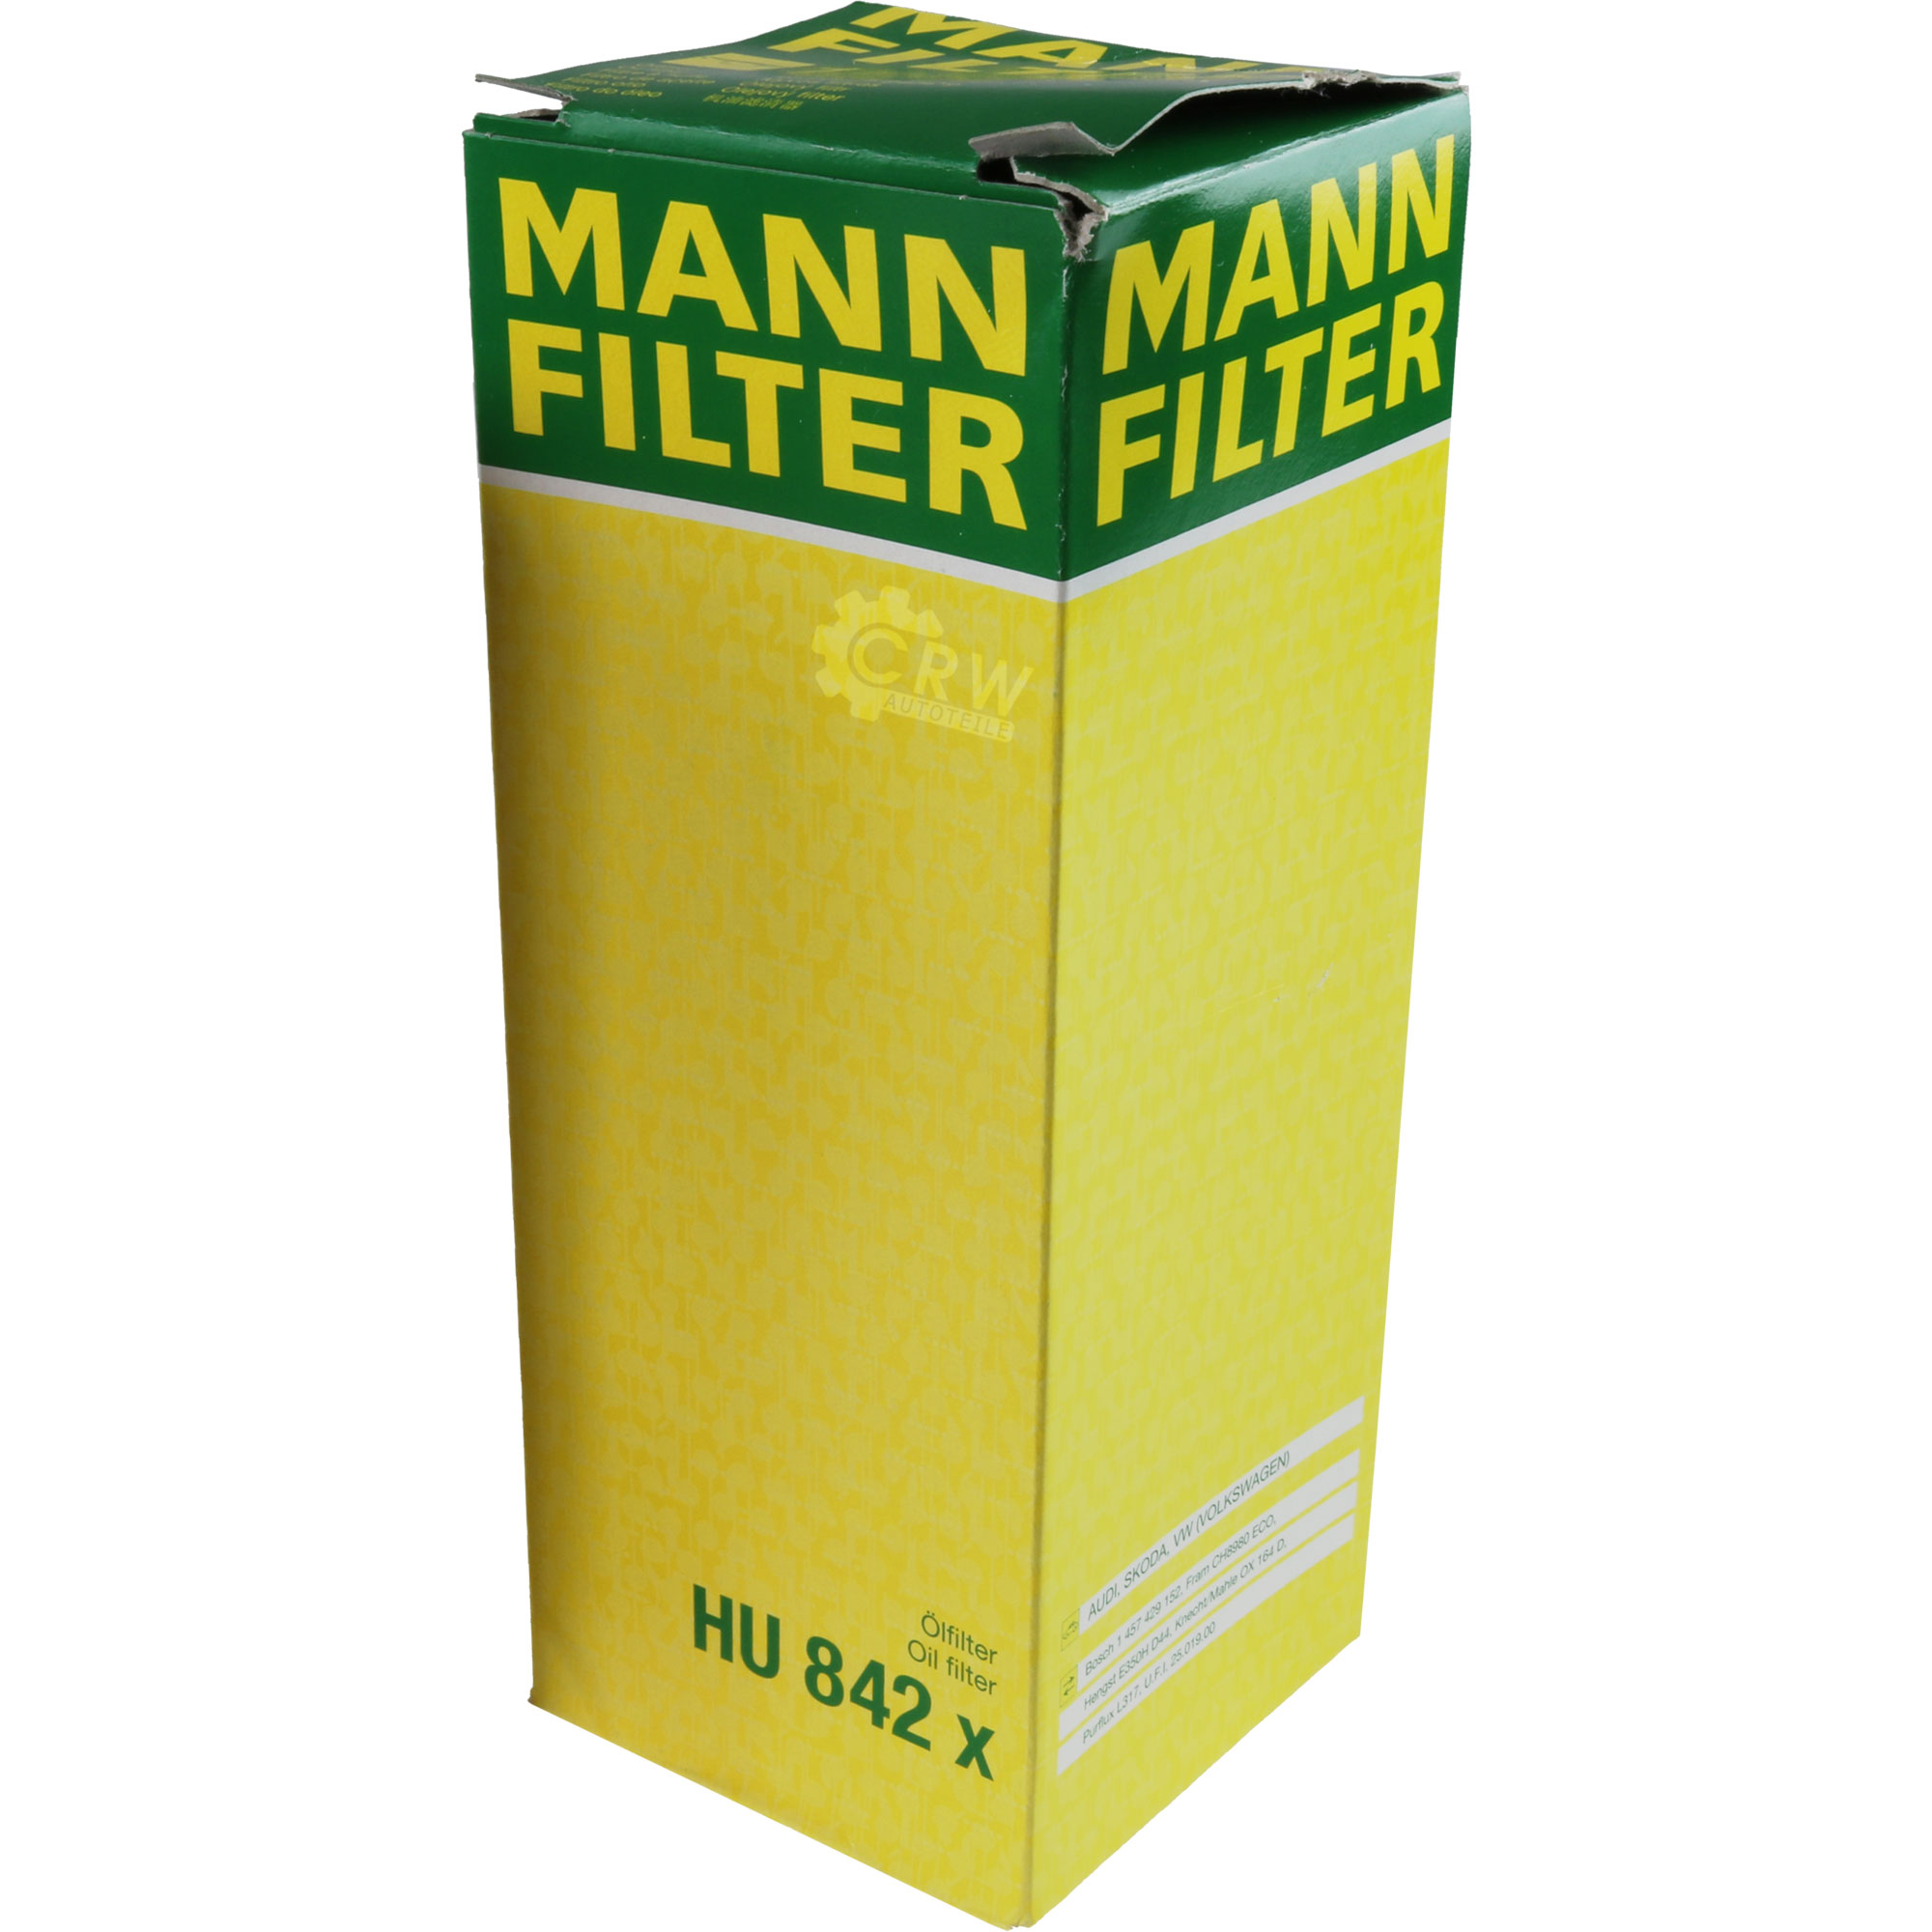 MANN-FILTER Ölfilter HU 842 x Oil Filter